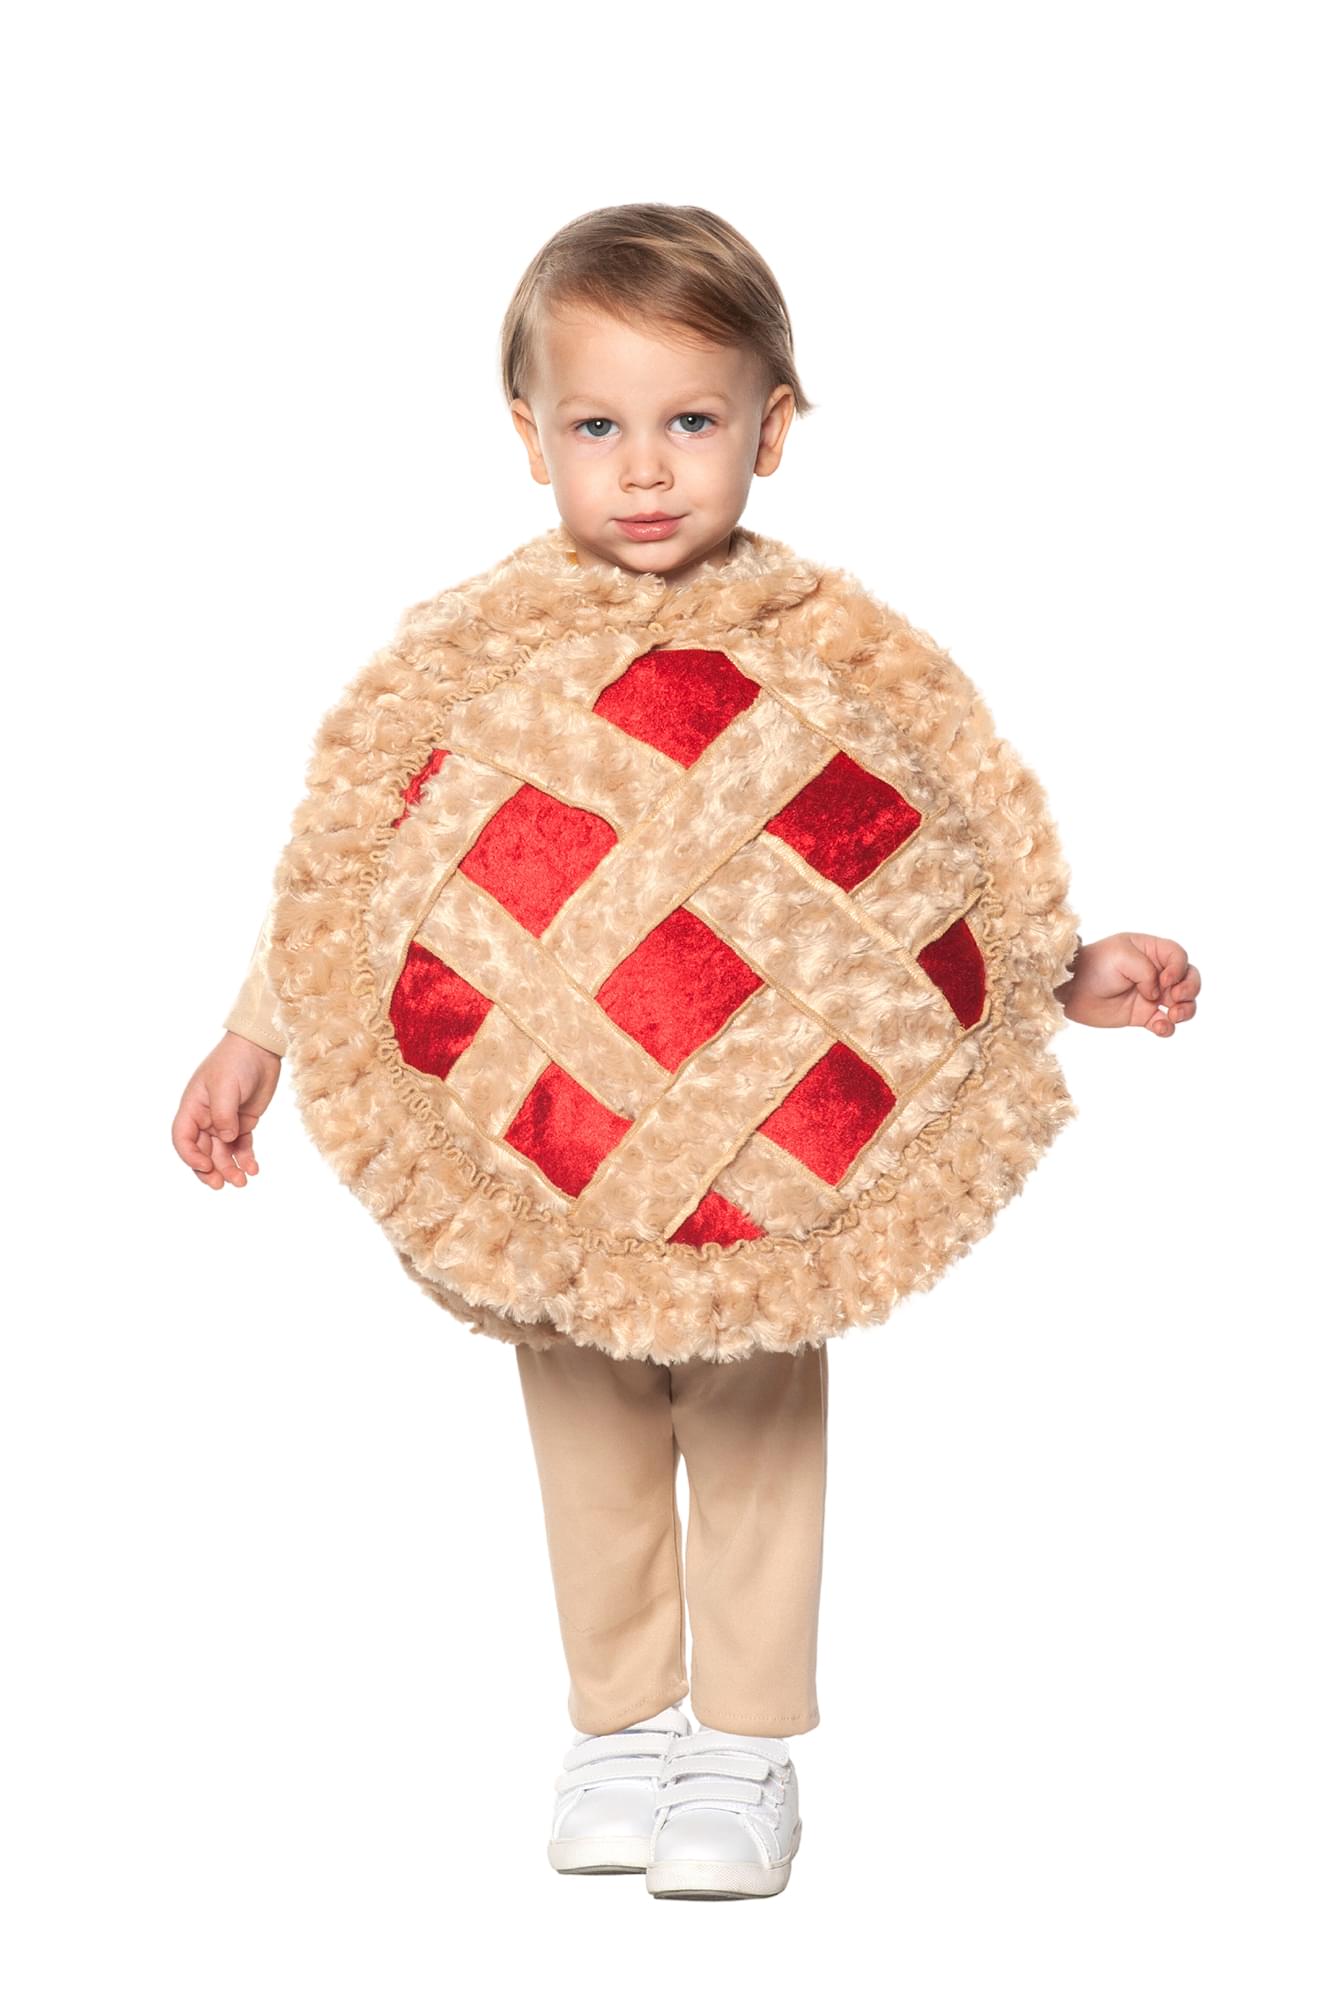 Cutie Pie  Child Costume